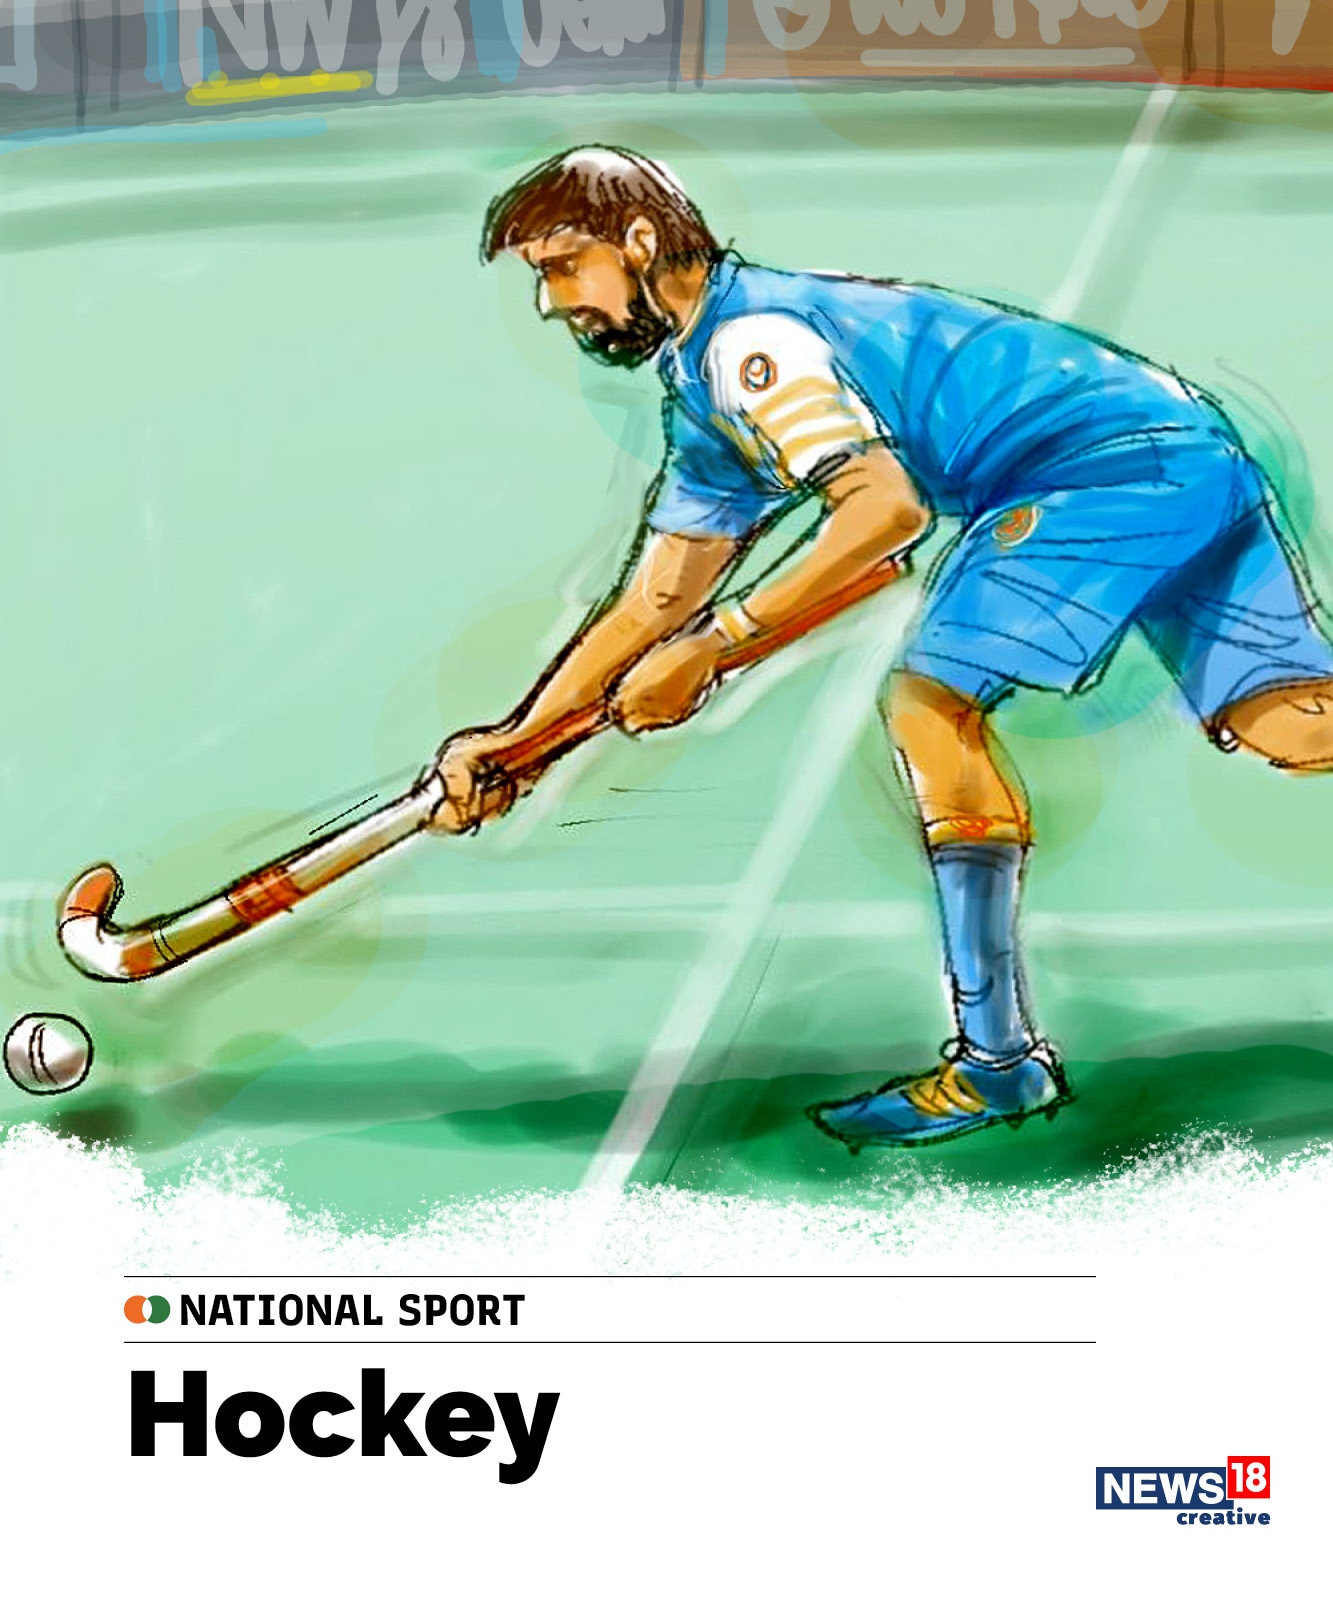 hockey, india national sport, indian national symbols, india independence day